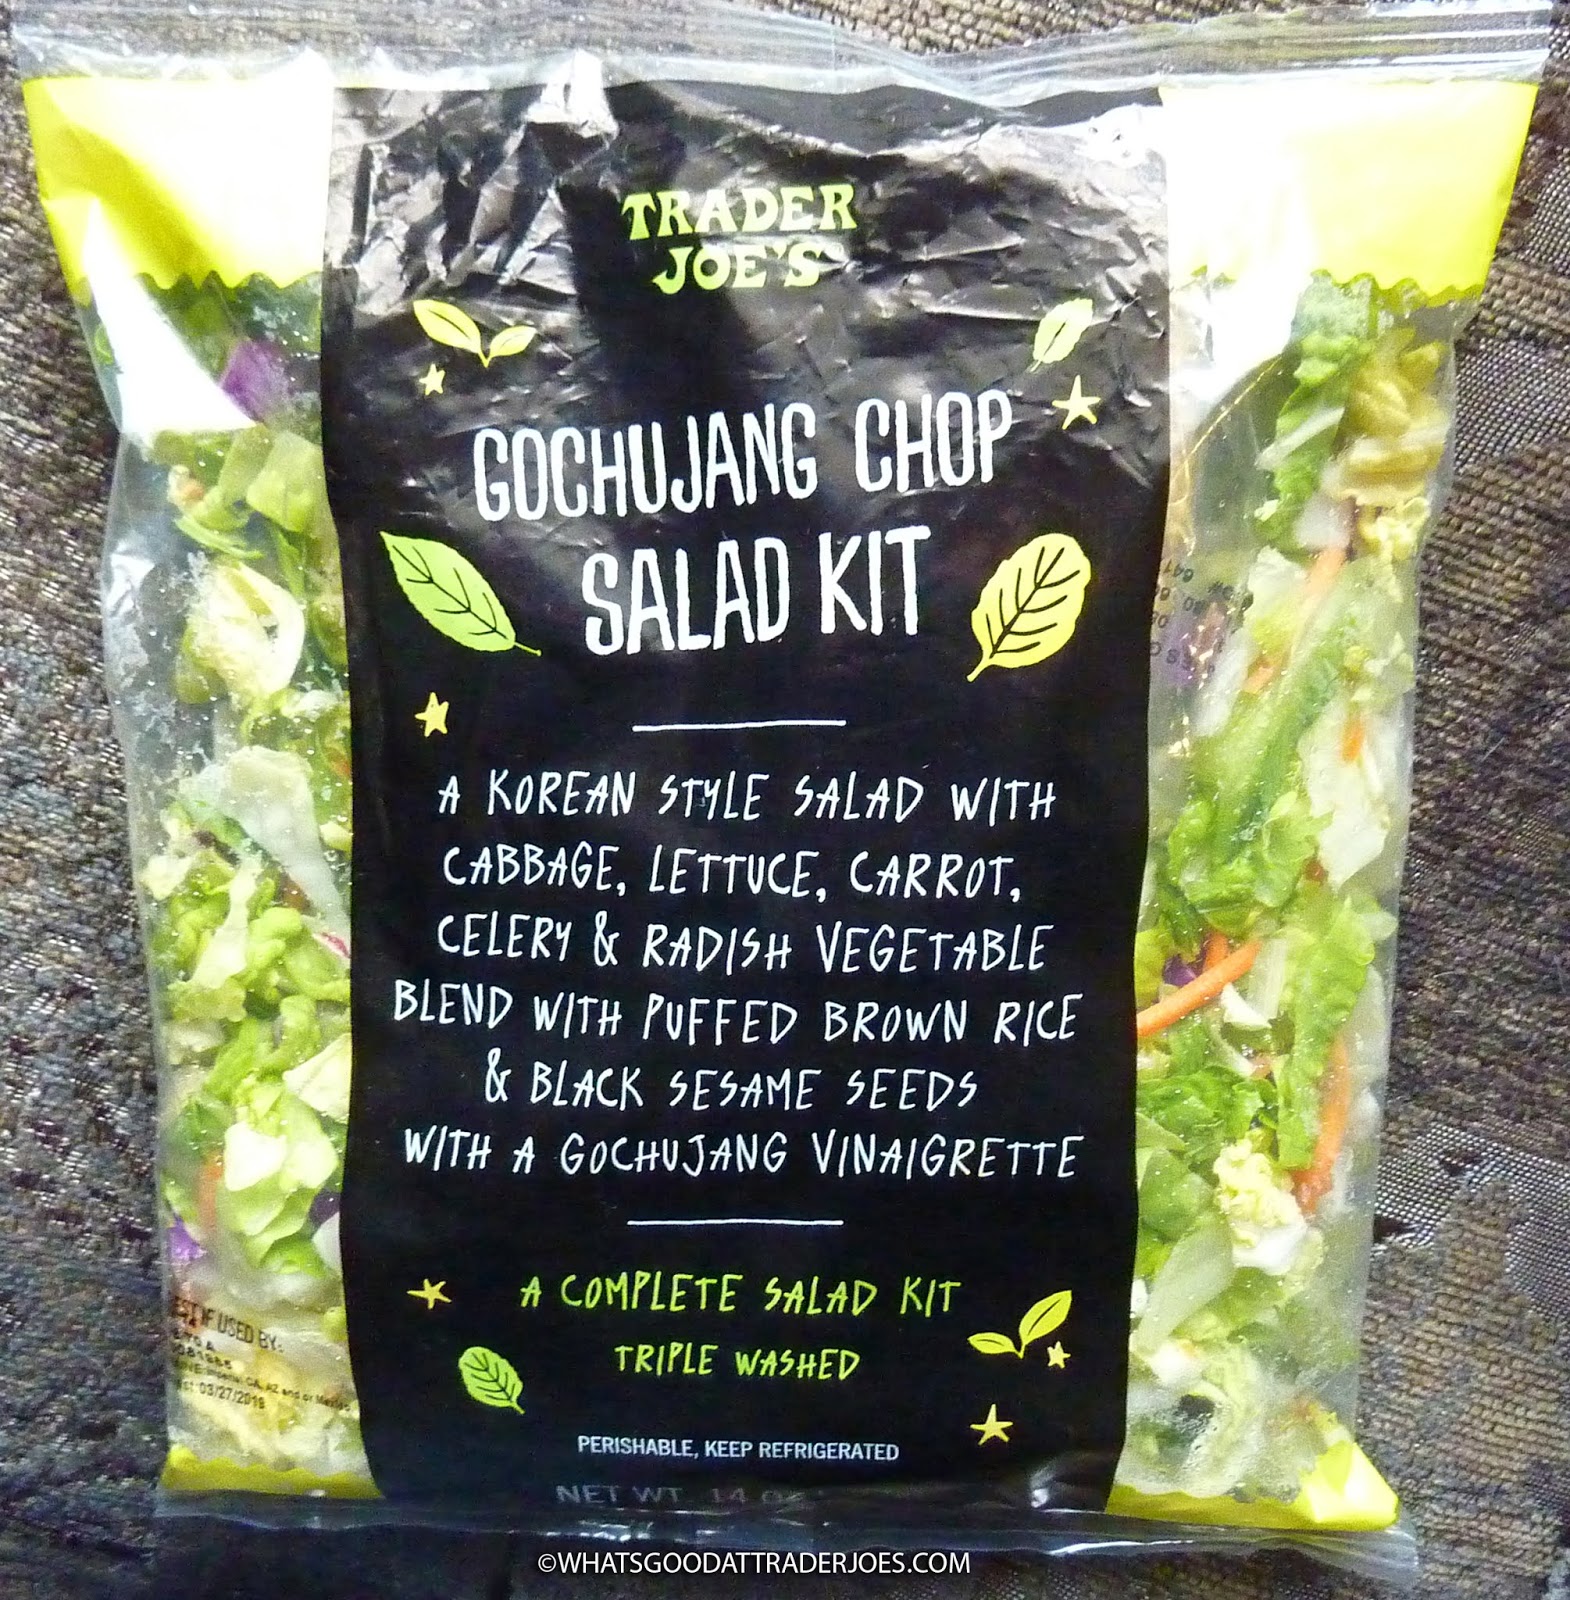 What's Good at Trader Joe's?: Trader Joe's Gochujang Chop Salad Kit